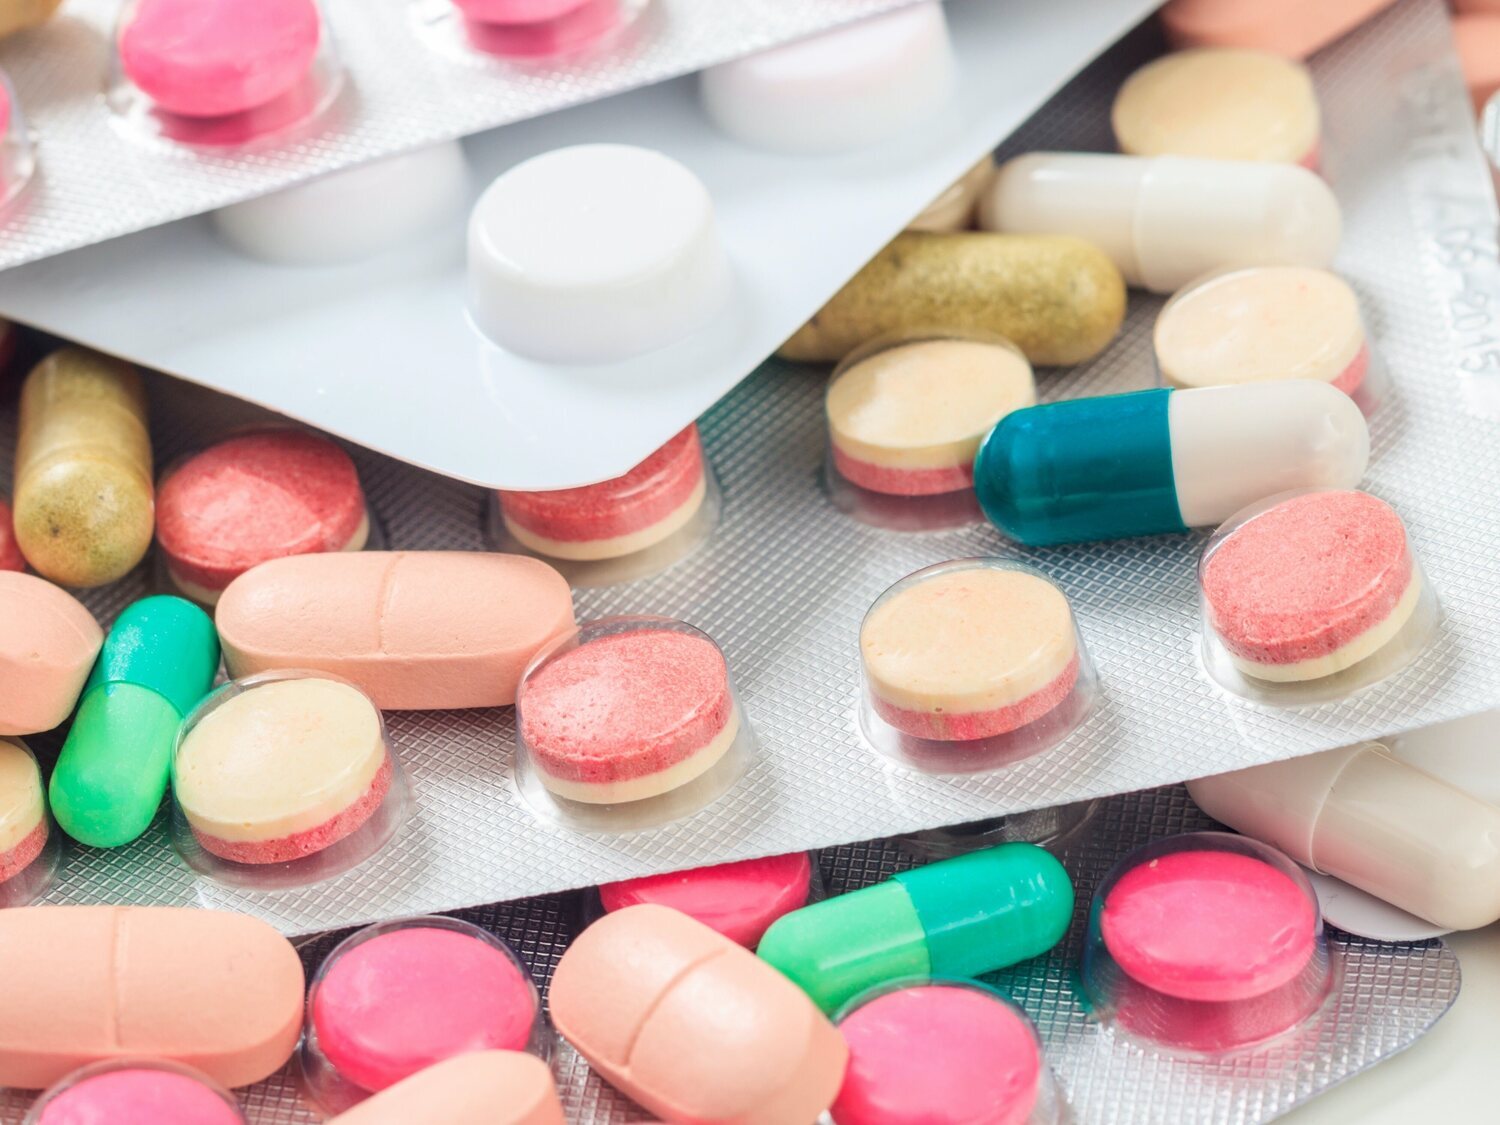 Alerta sanitaria: retiran estos medicamentos de todas las farmacias por un elemento cancerígeno